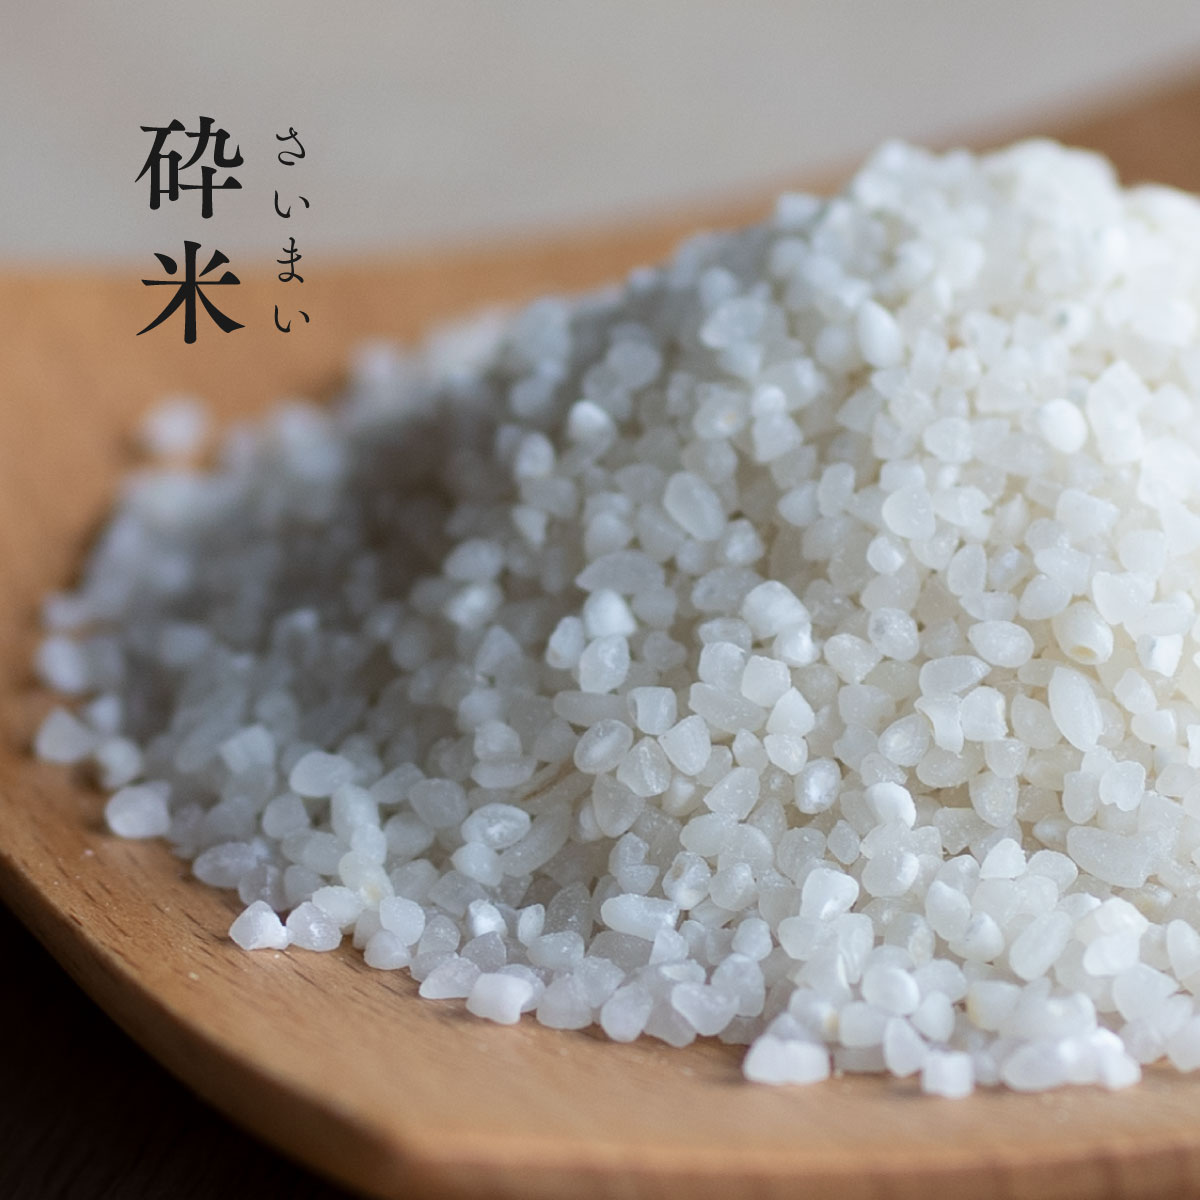 砕米 砕け米 10kg 5kg 2袋 送料無料 くだけ米 割れ米 くず米 餌米 エサ米 ペット用米 小動物・小鳥のエサにおすすめ 食用ではありません